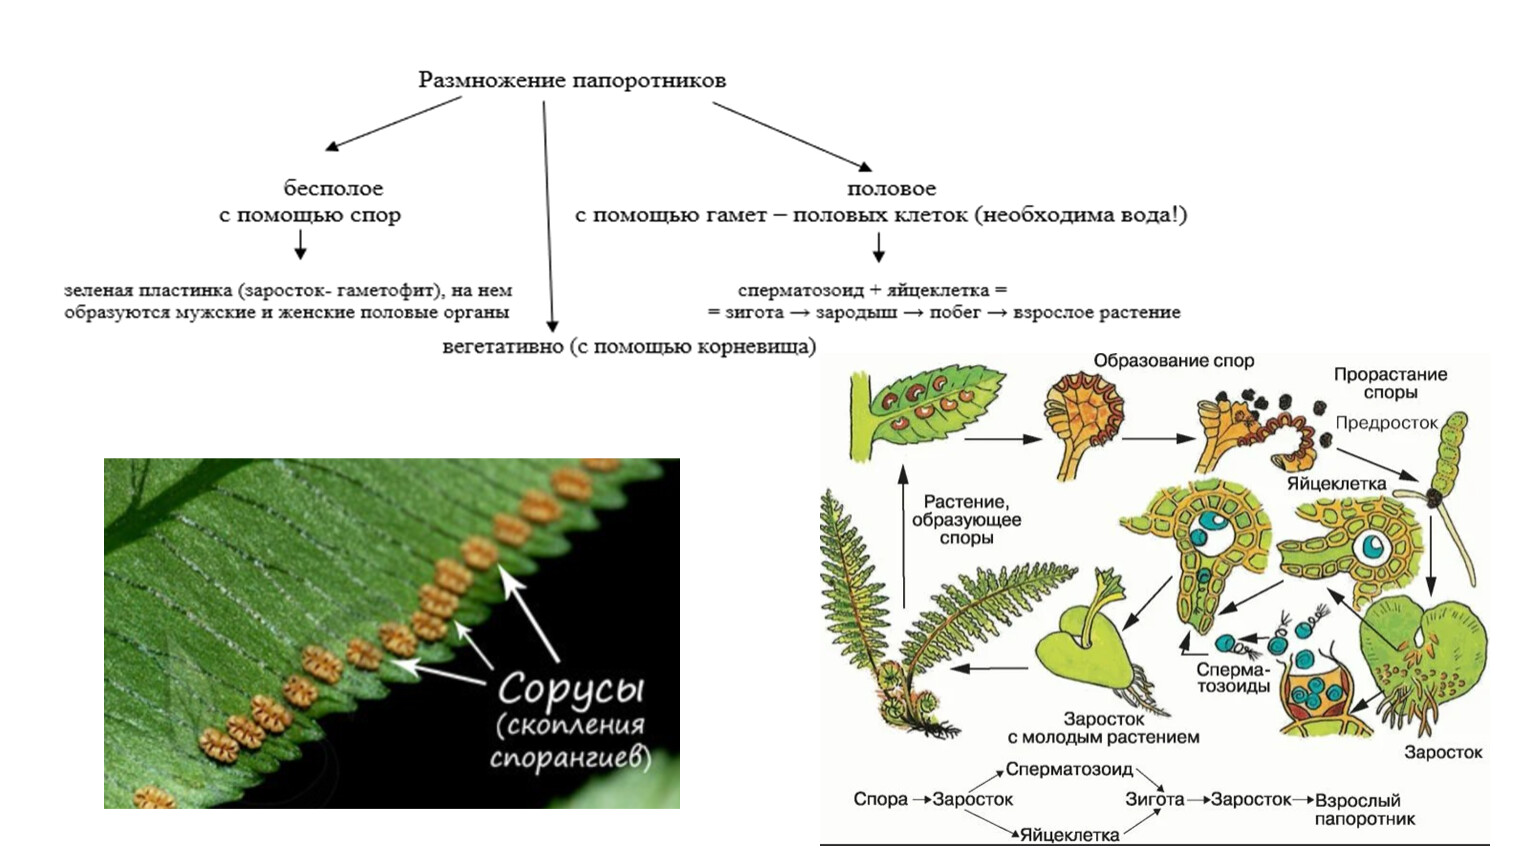 Гаметофит плауна. Жизненный цикл папоротника орляка. Заросток плаунов. Схема развития споровых растений.